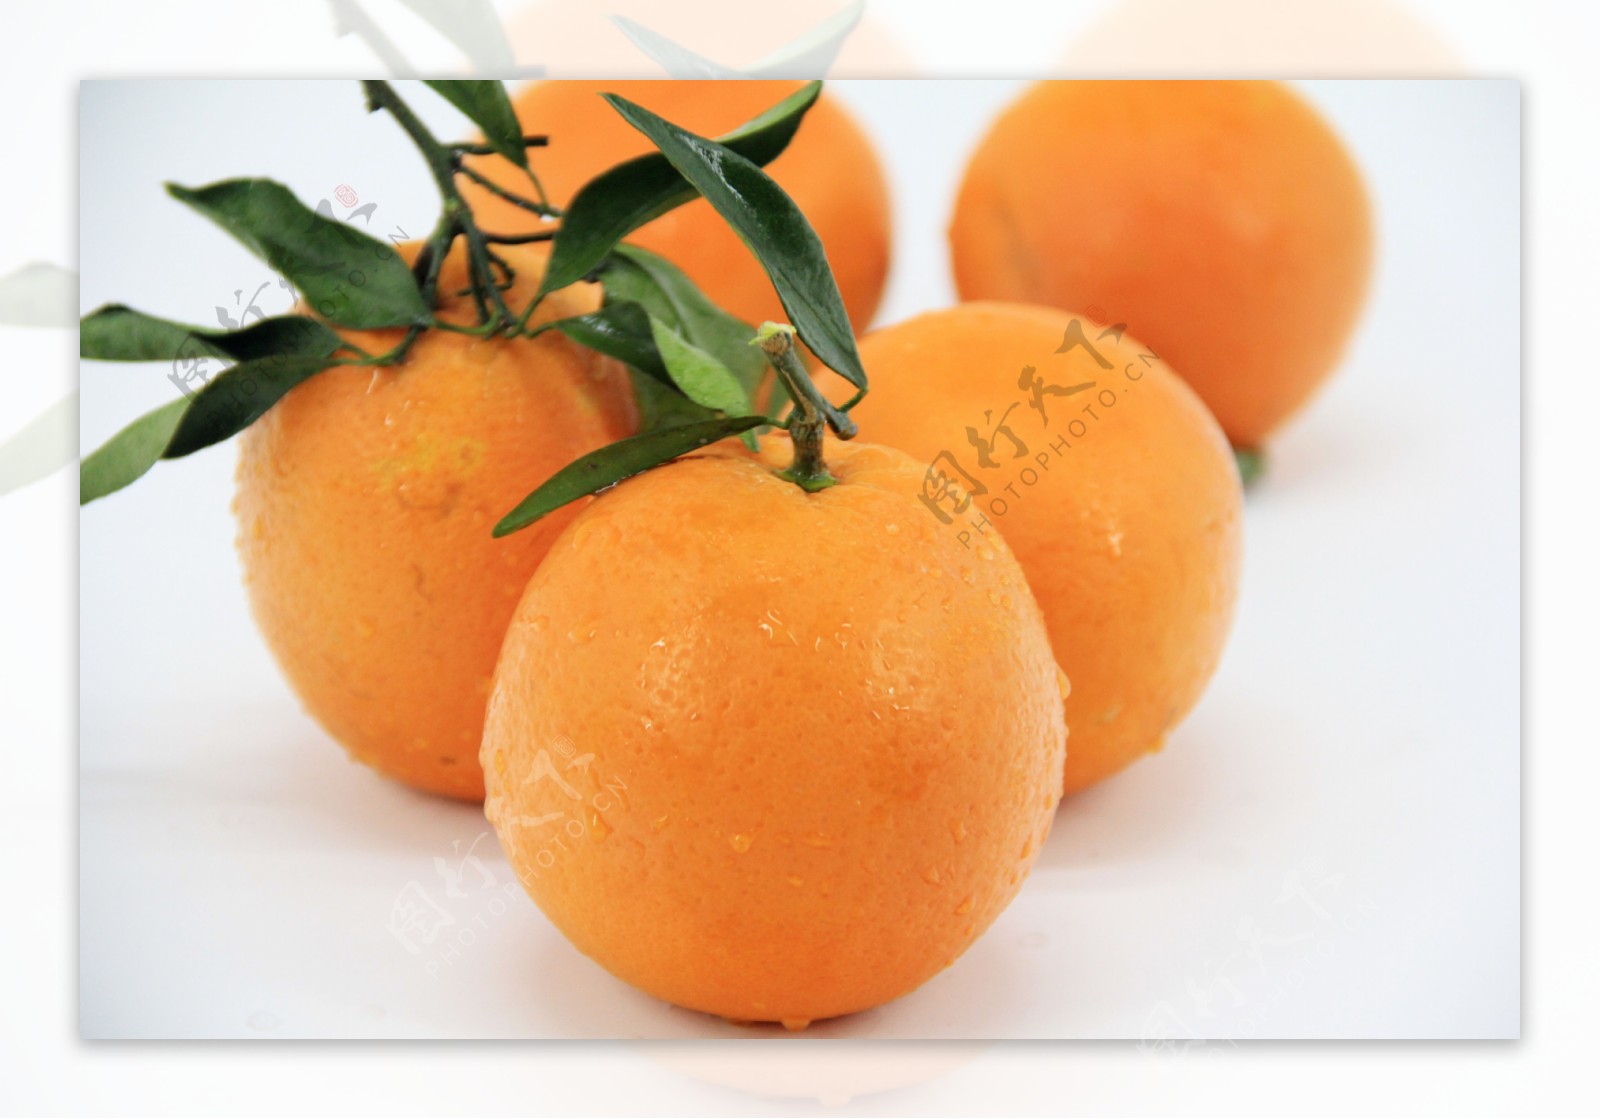 橙子水果橙